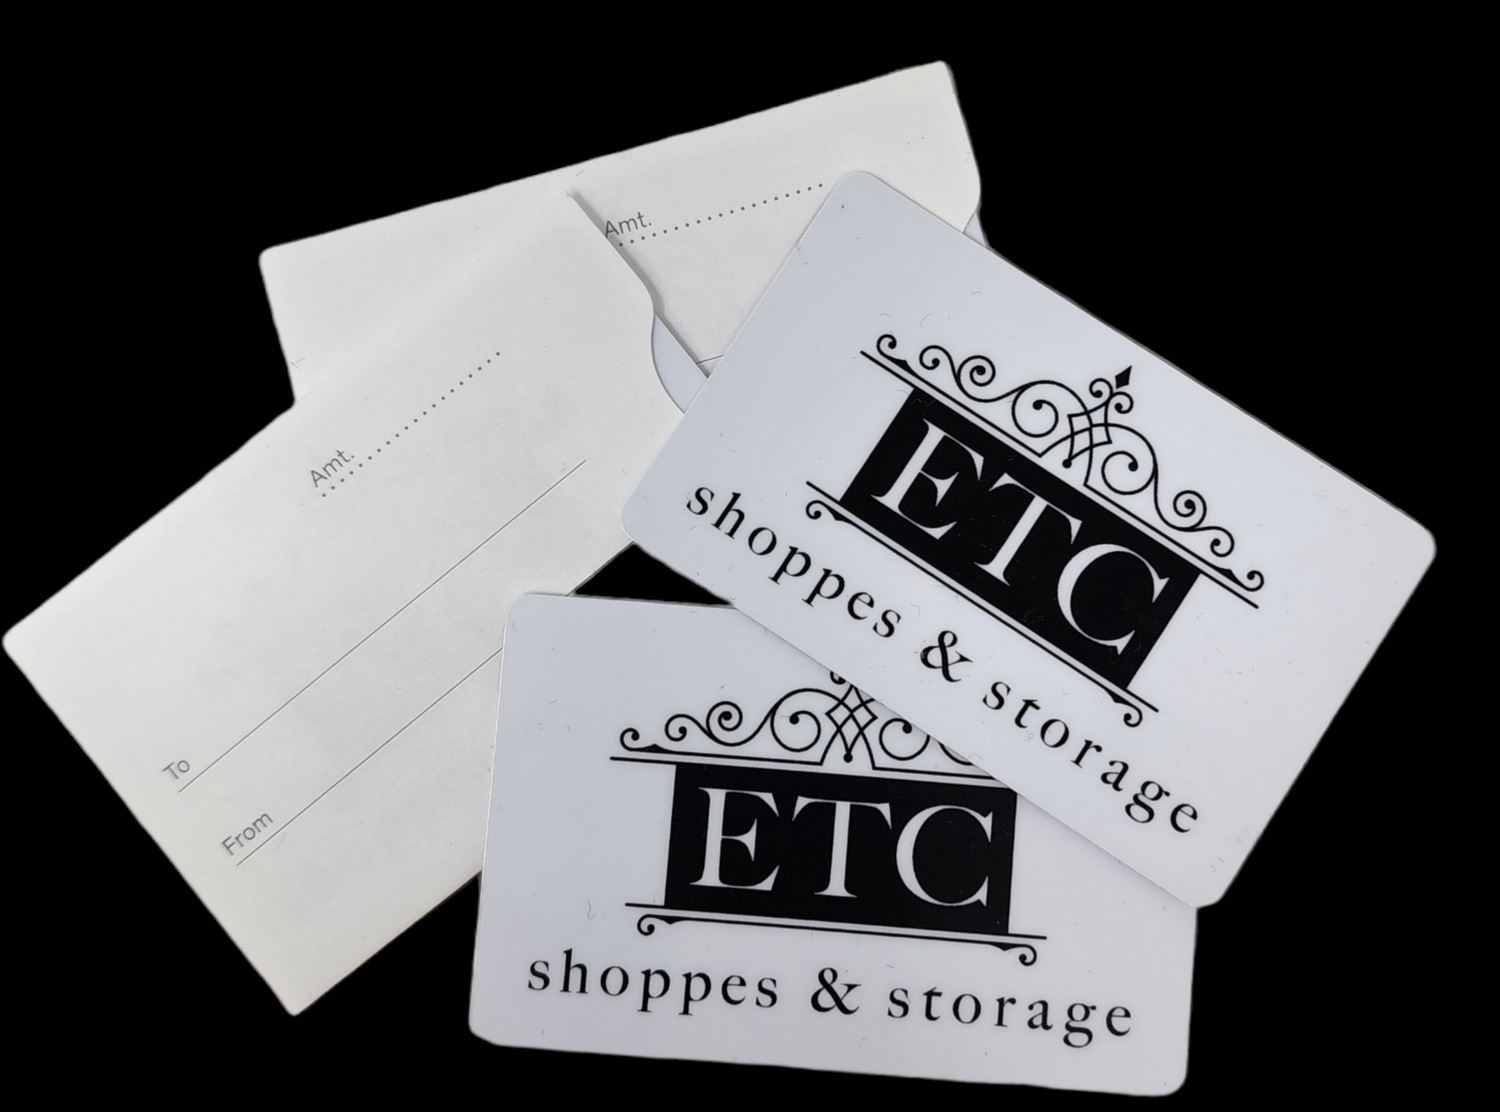 ETC shoppes & storage GIFT CARDS